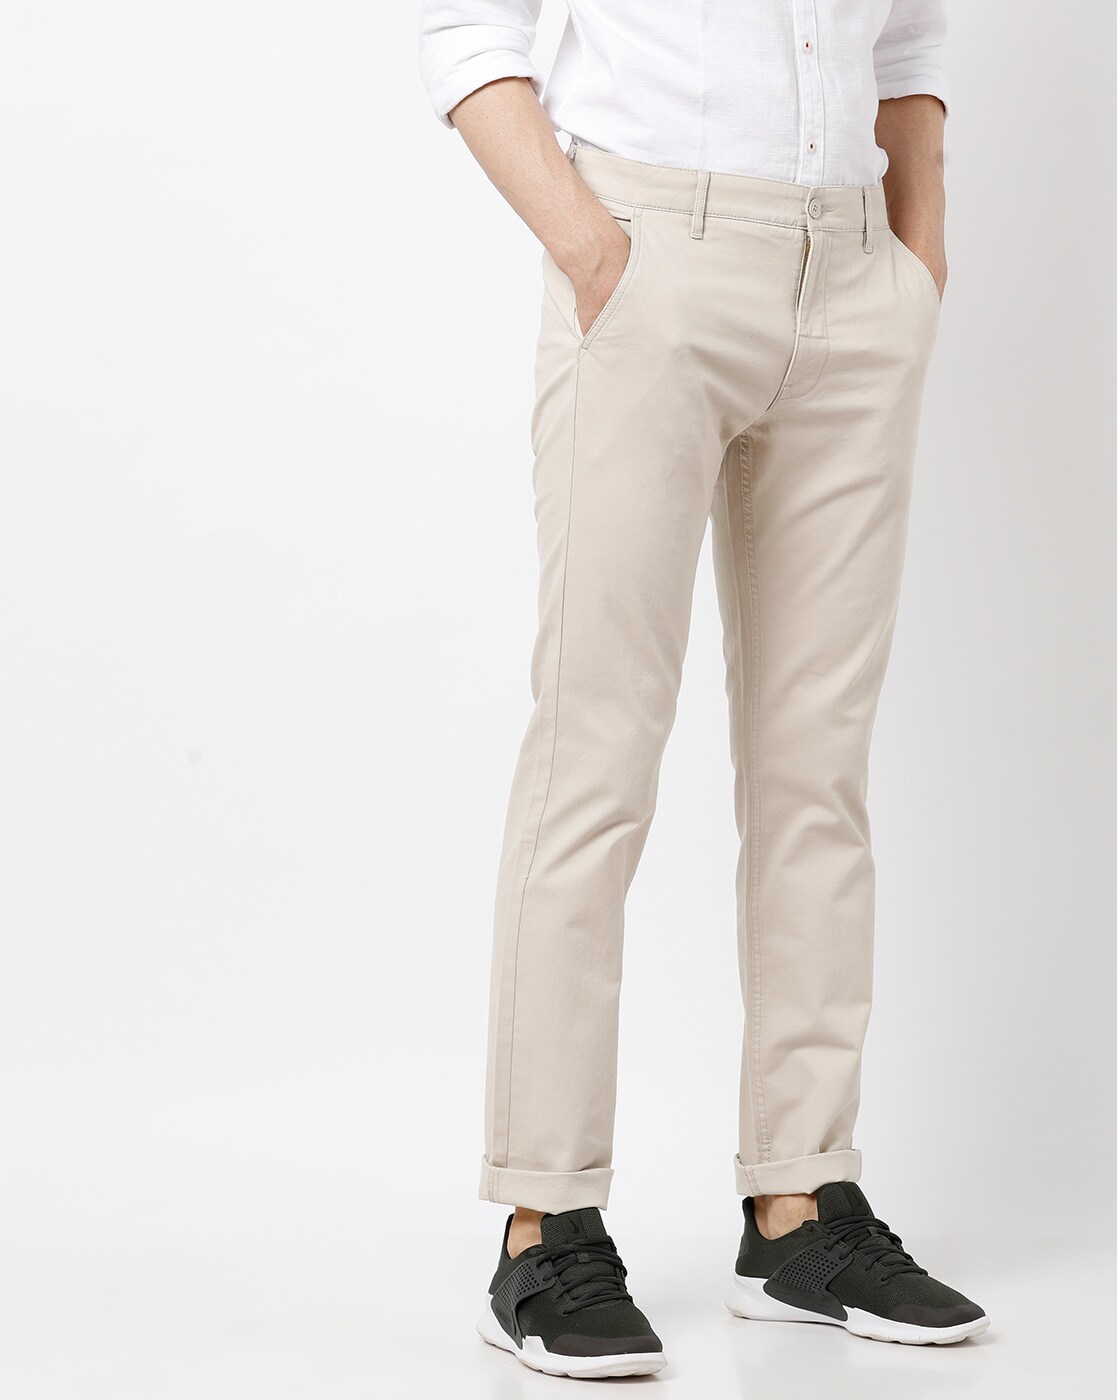 LEVIS Slim Fit Men Khaki Trousers  Buy LEVIS Slim Fit Men Khaki Trousers  Online at Best Prices in India  Flipkartcom